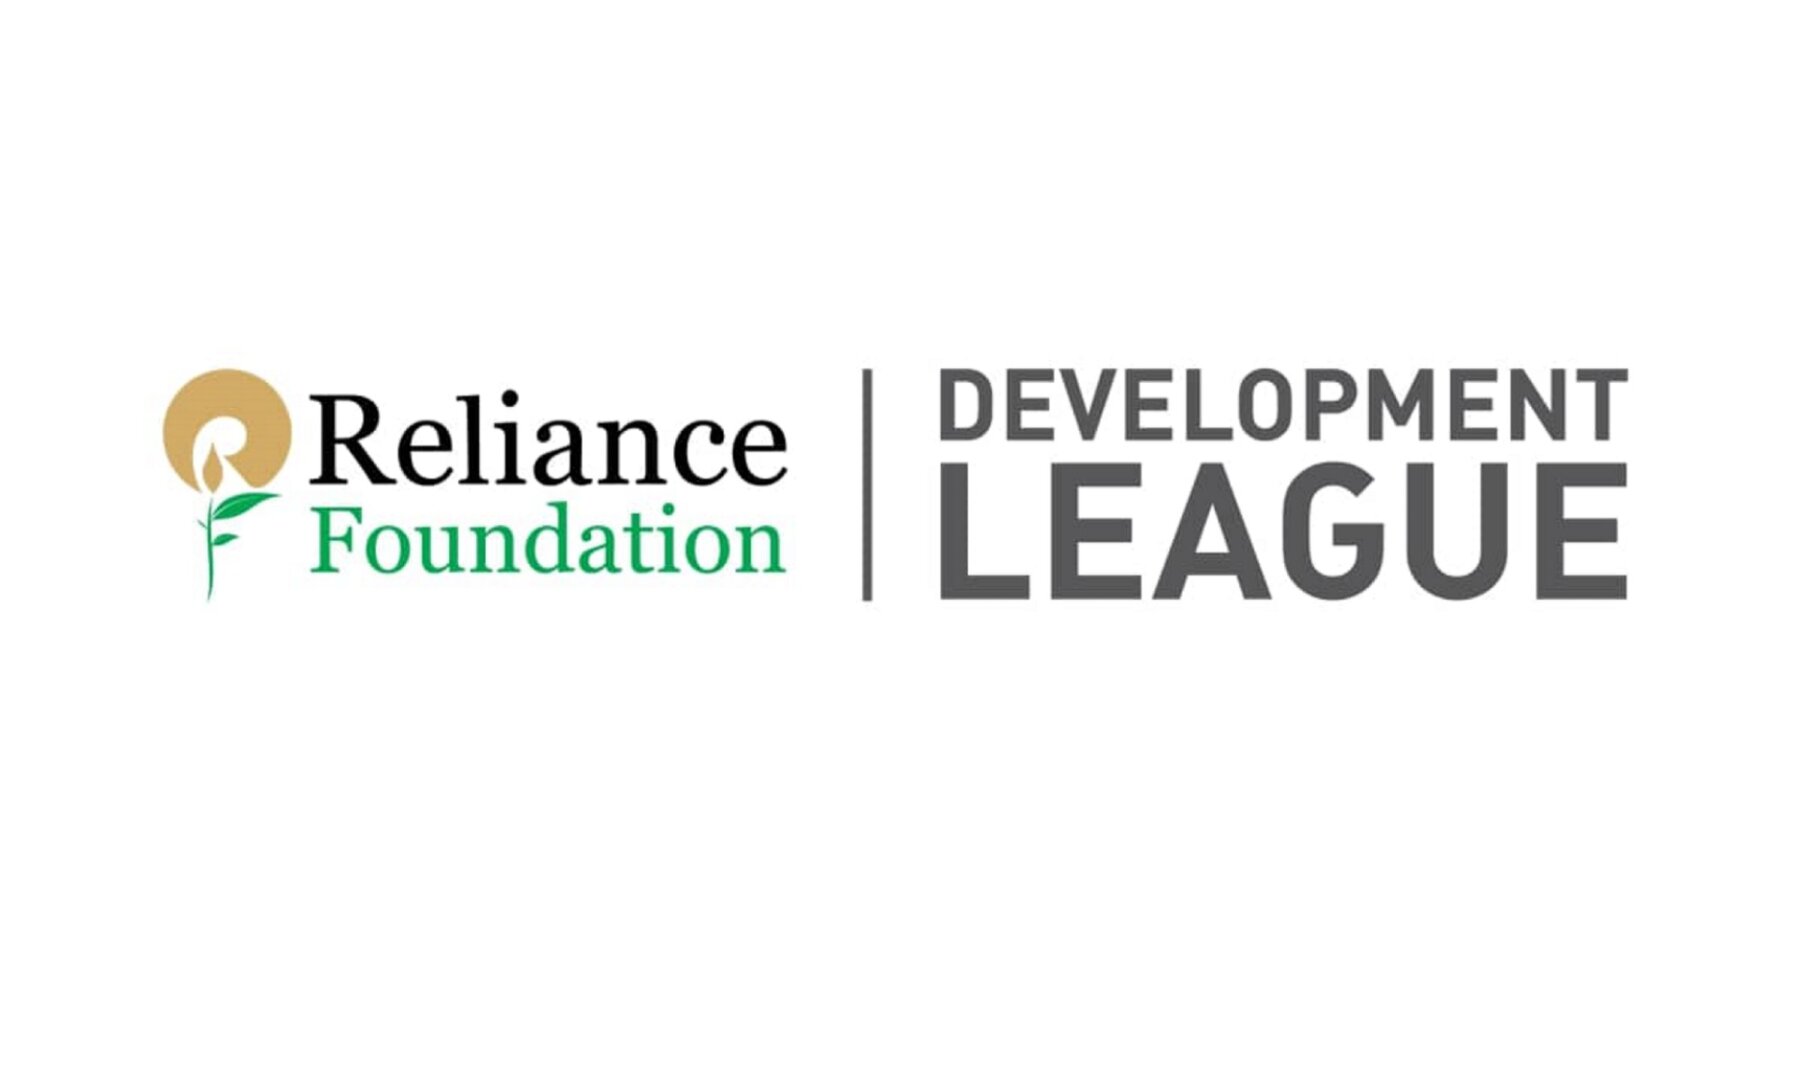 Reliance Foundation Development League